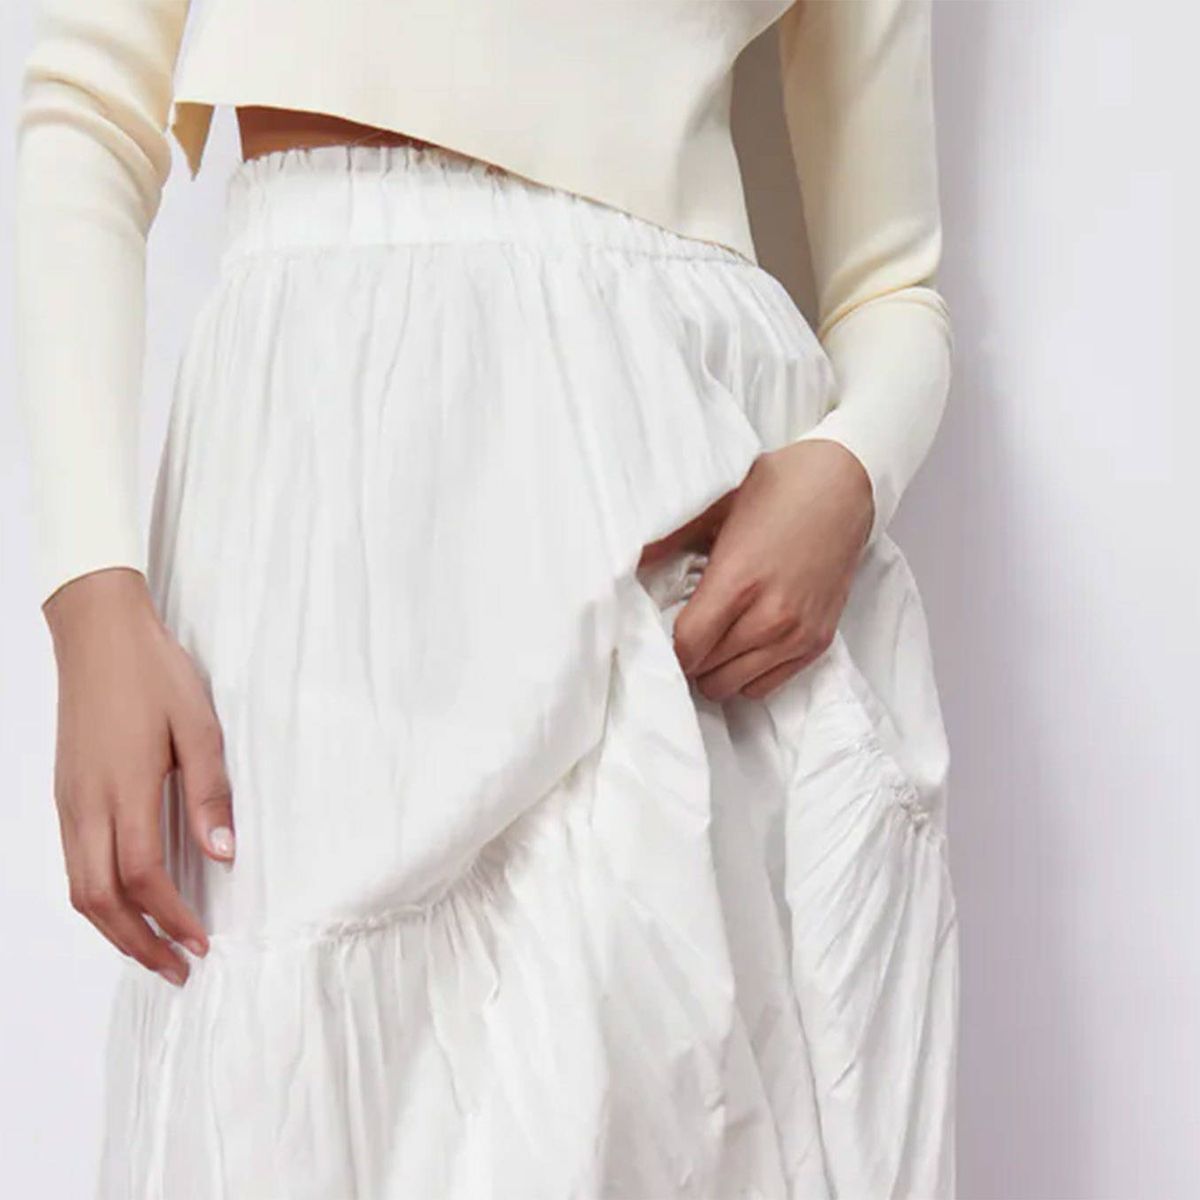 grueso Alacena público 4 faldas largas de Zara cómodas, bonitas y a precio asequible